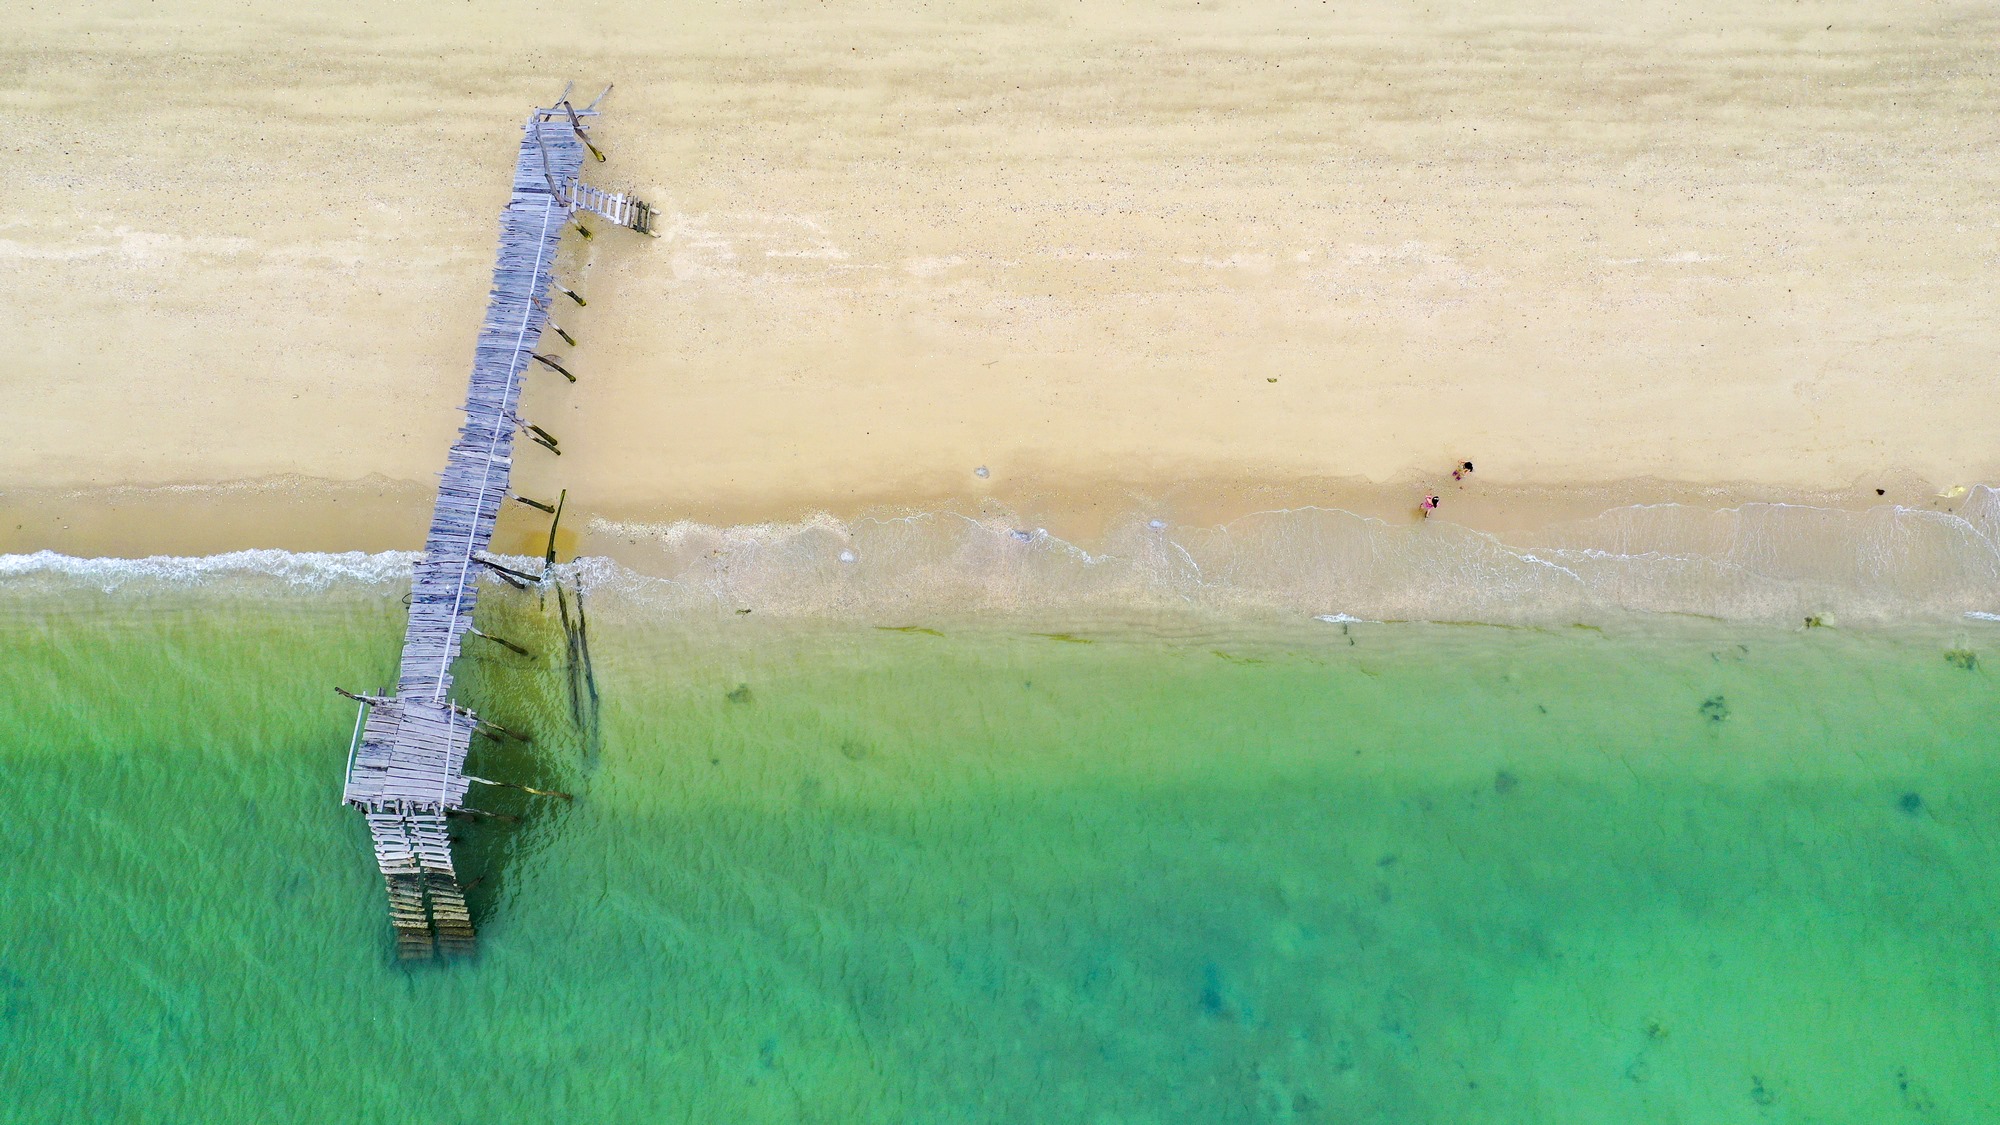 Cô Tô còn sở hữu những bãi biển với cát trắng trải dài, là nơi mọi người đến vui đùa với sóng nước trong xanh.